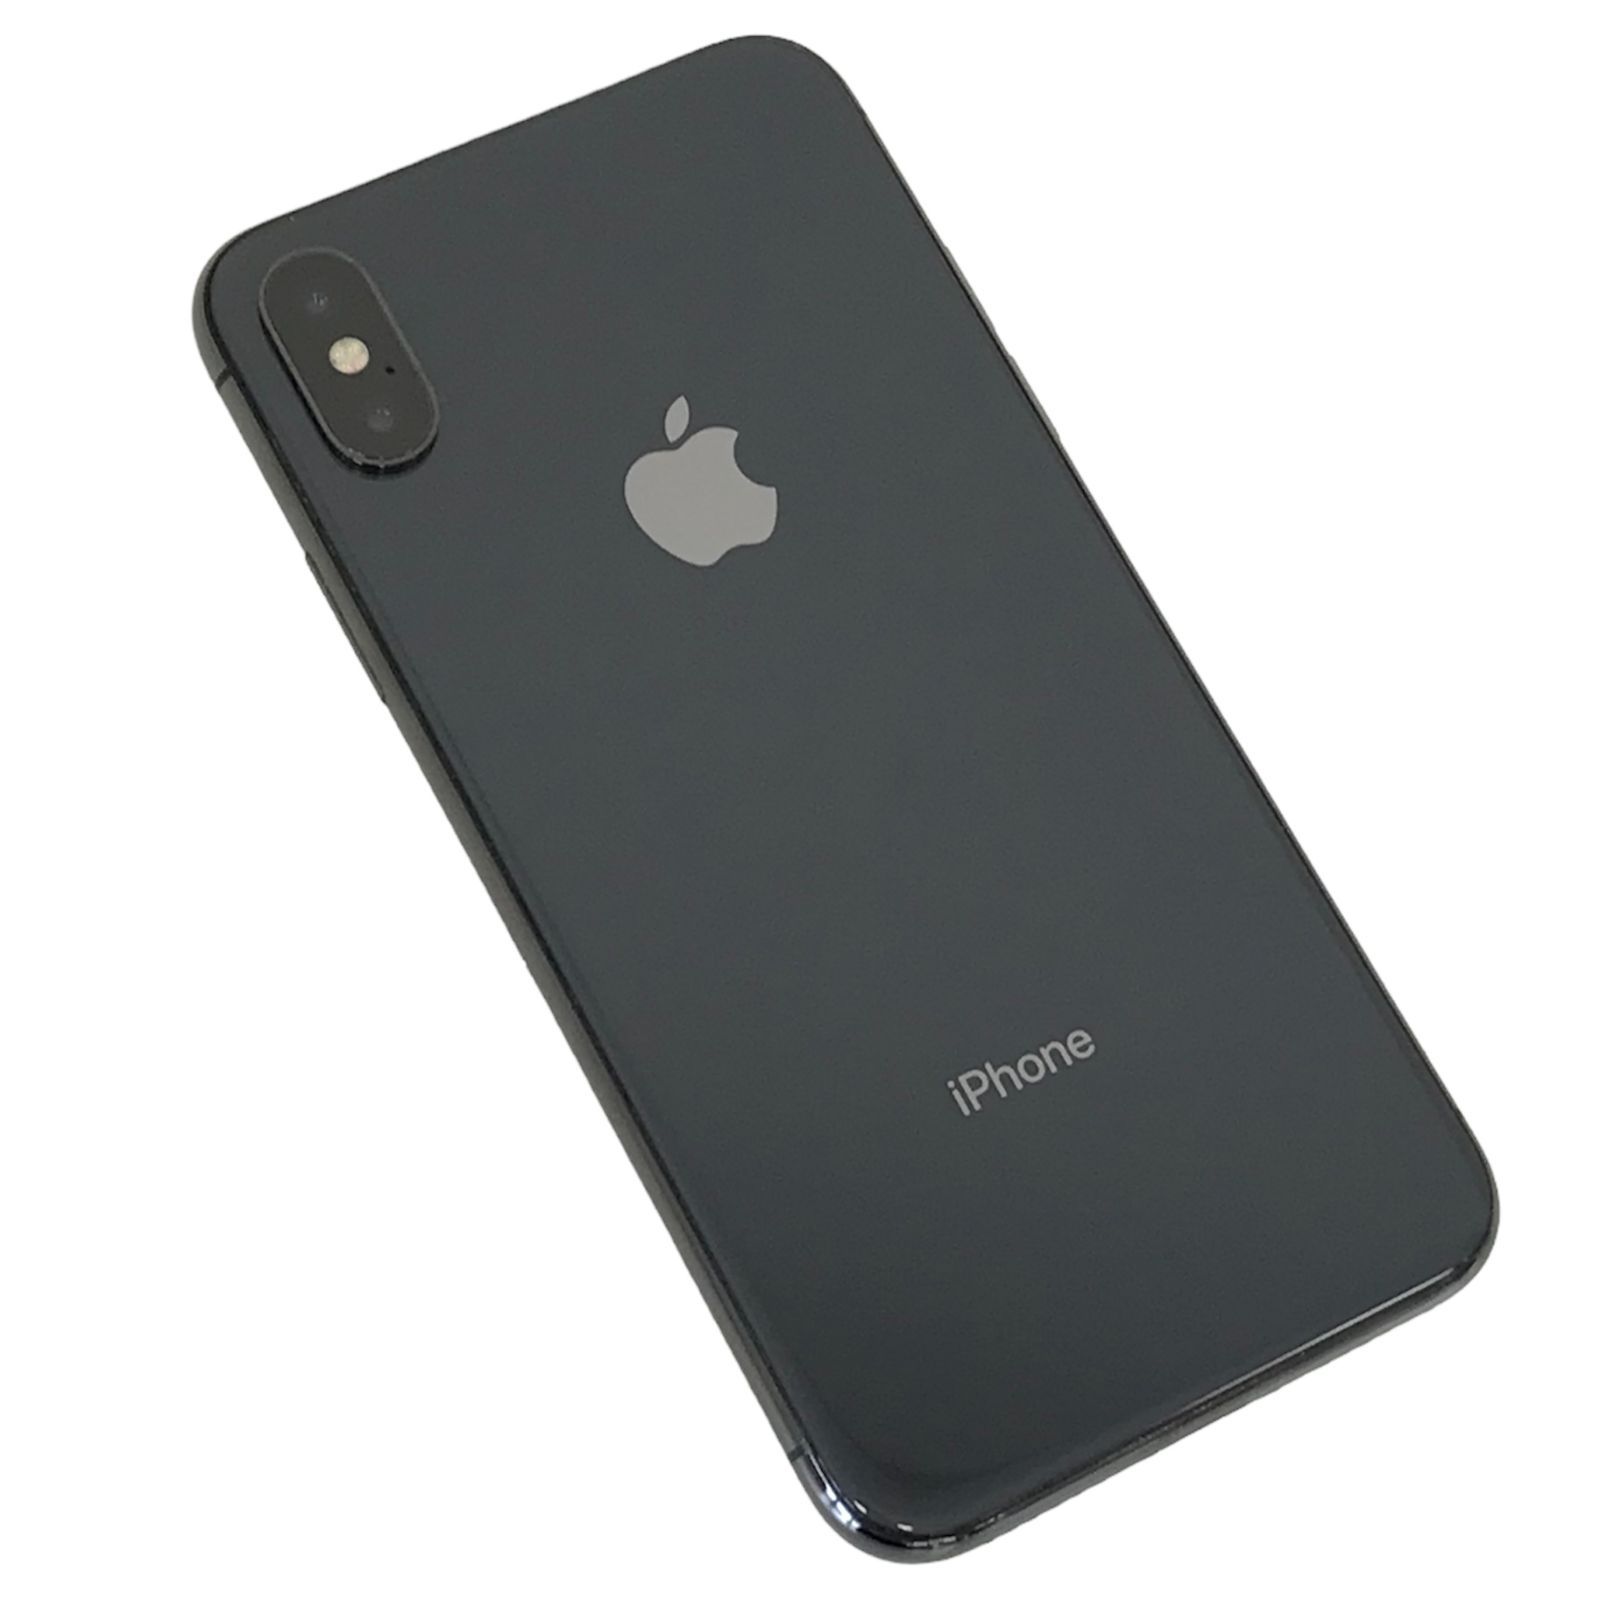 【直送可】iPhone X スペースグレー 64GB SIMロック解除済み スマートフォン本体